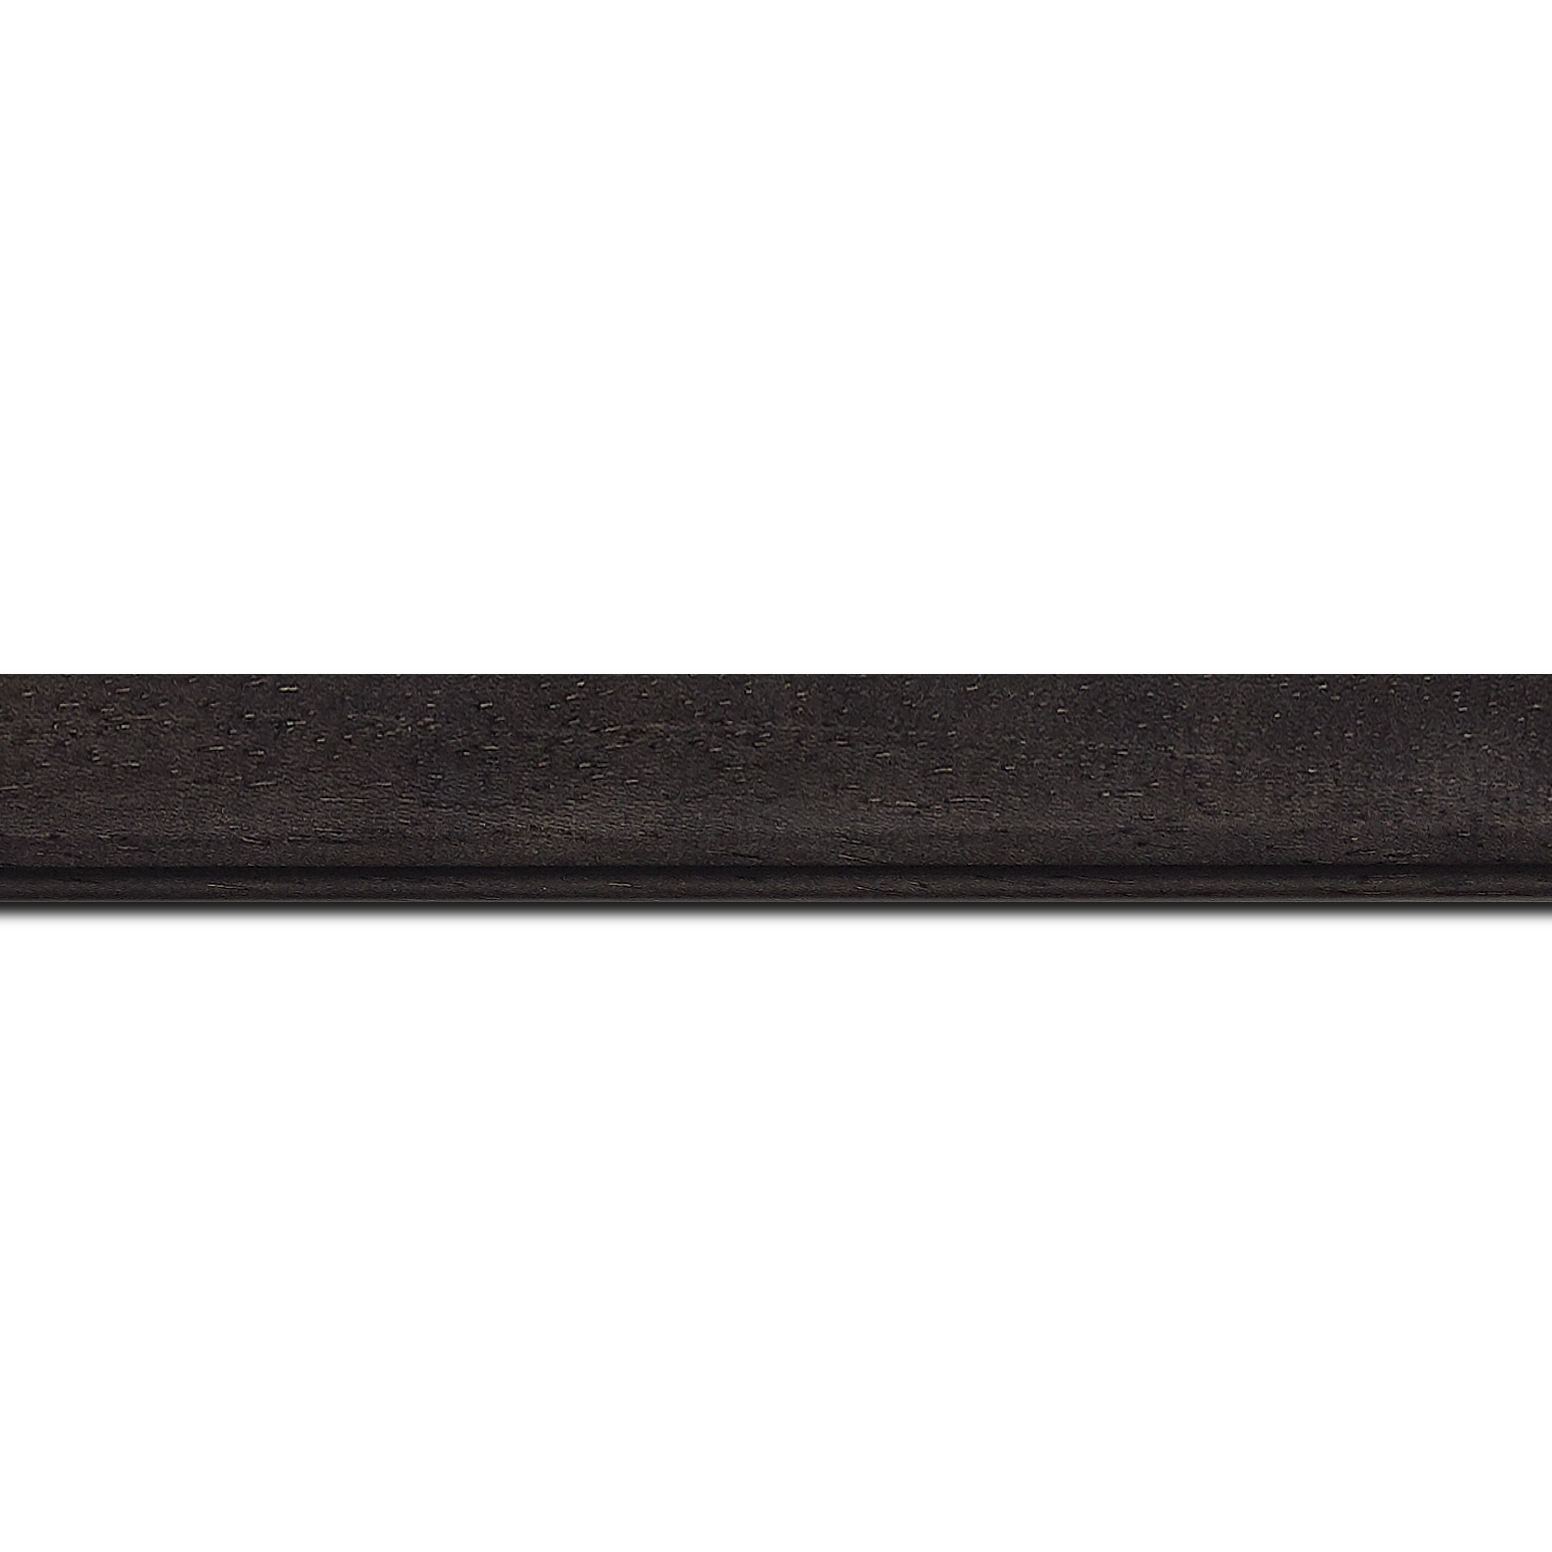 Pack par 12m, bois profil bombé largeur 2.4cm couleur noir anthracite satiné(longueur baguette pouvant varier entre 2.40m et 3m selon arrivage des bois)